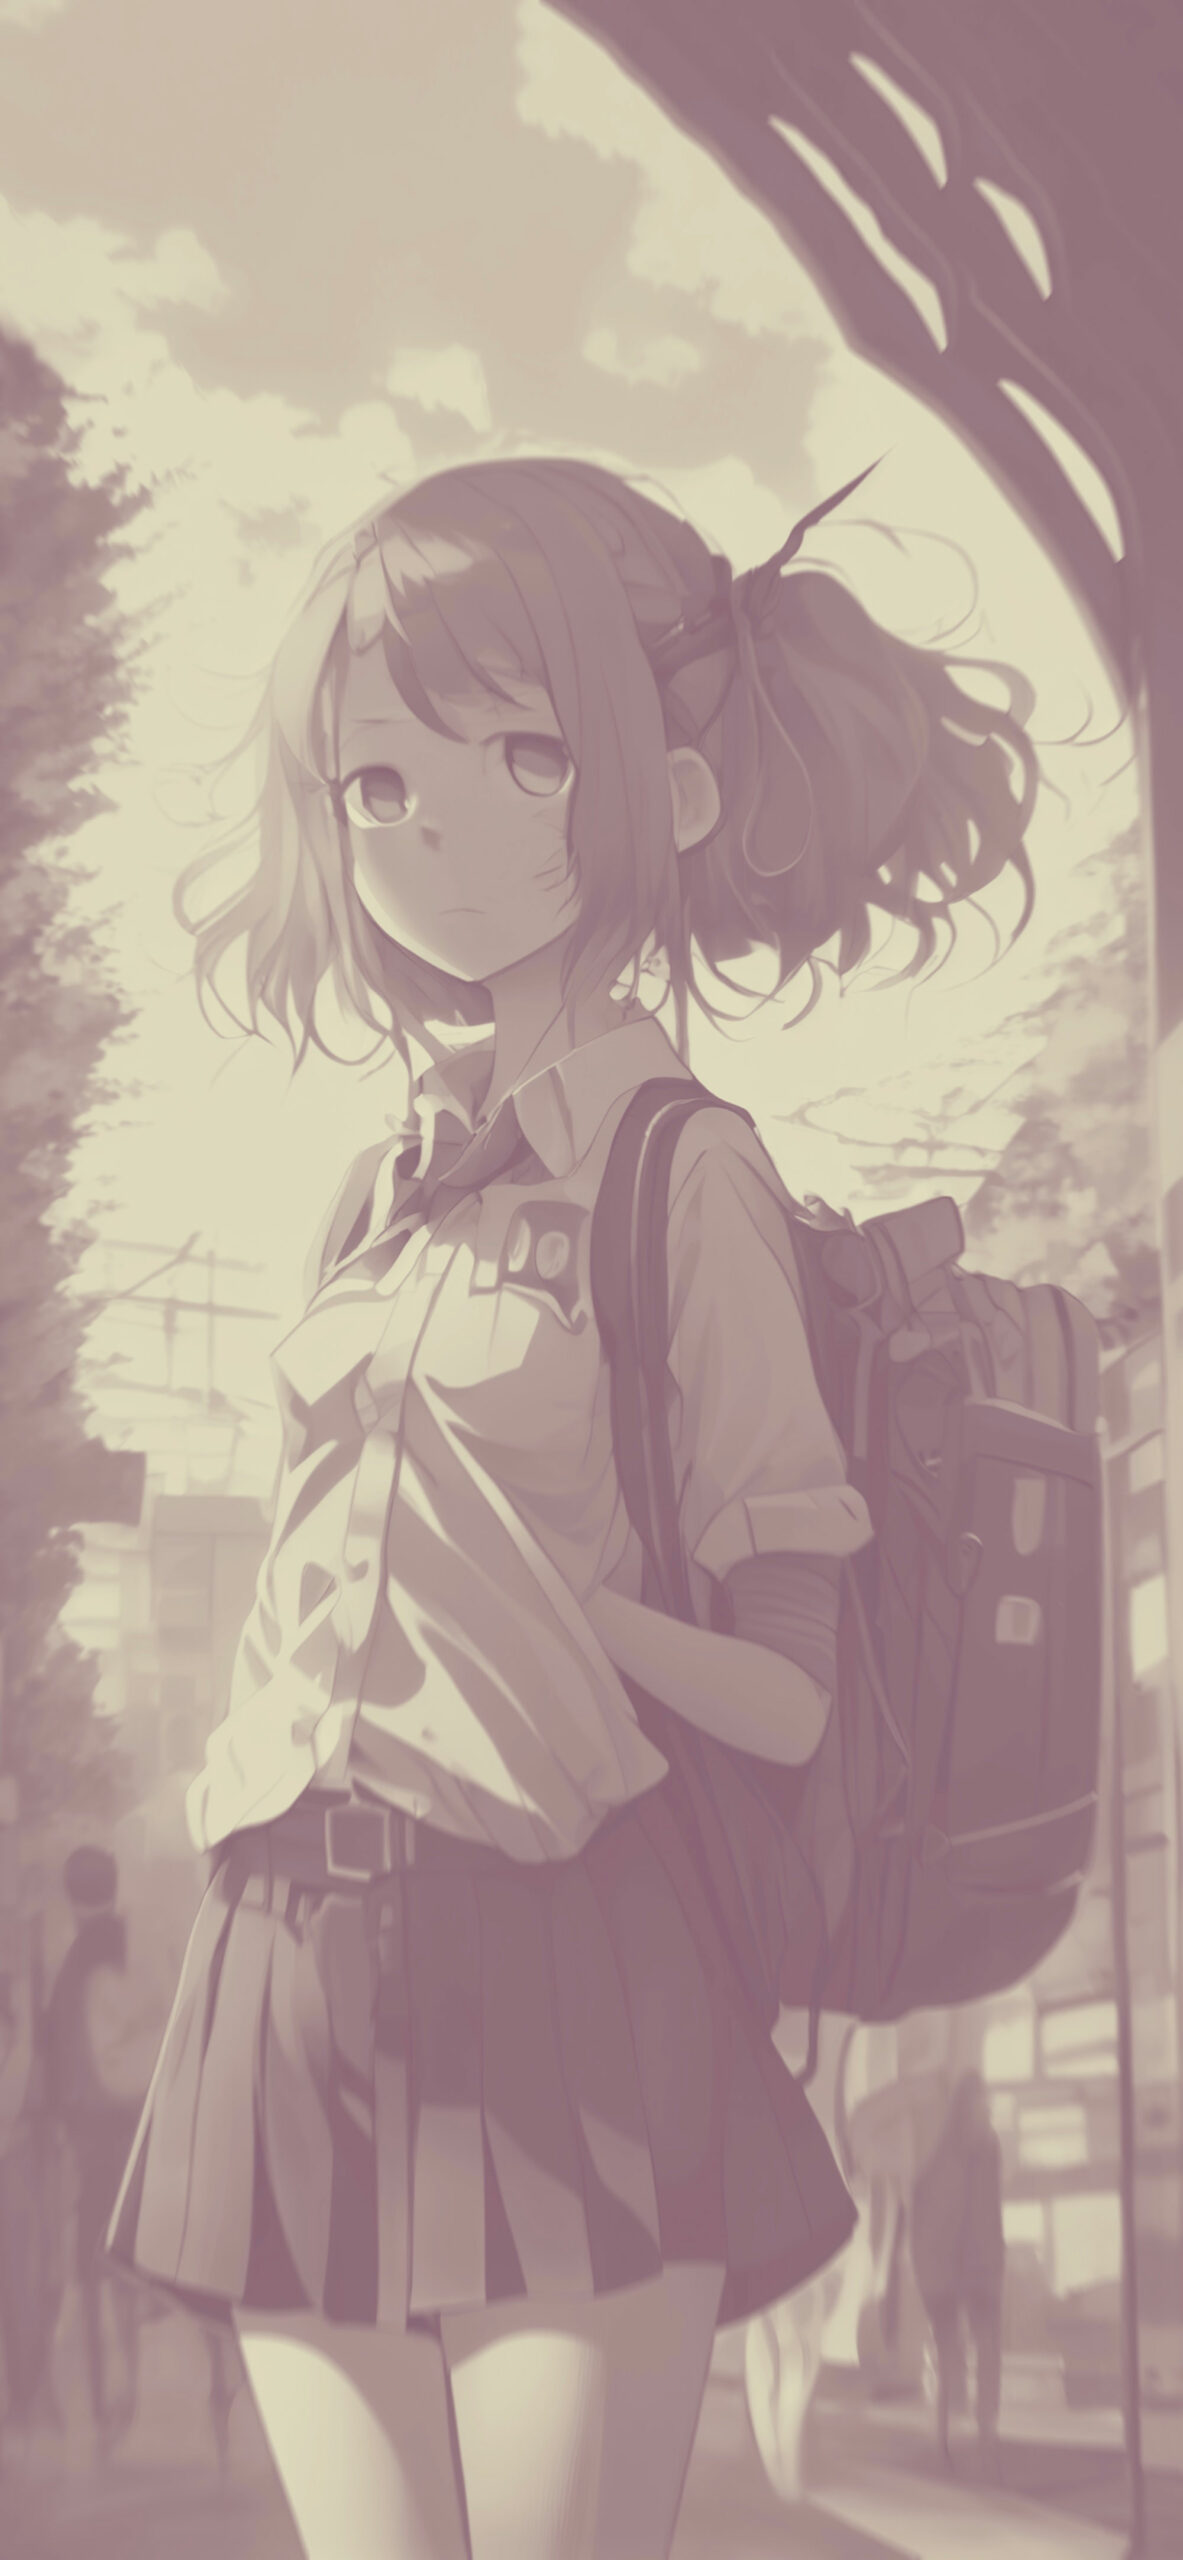 anime schoolgirl with backpack background